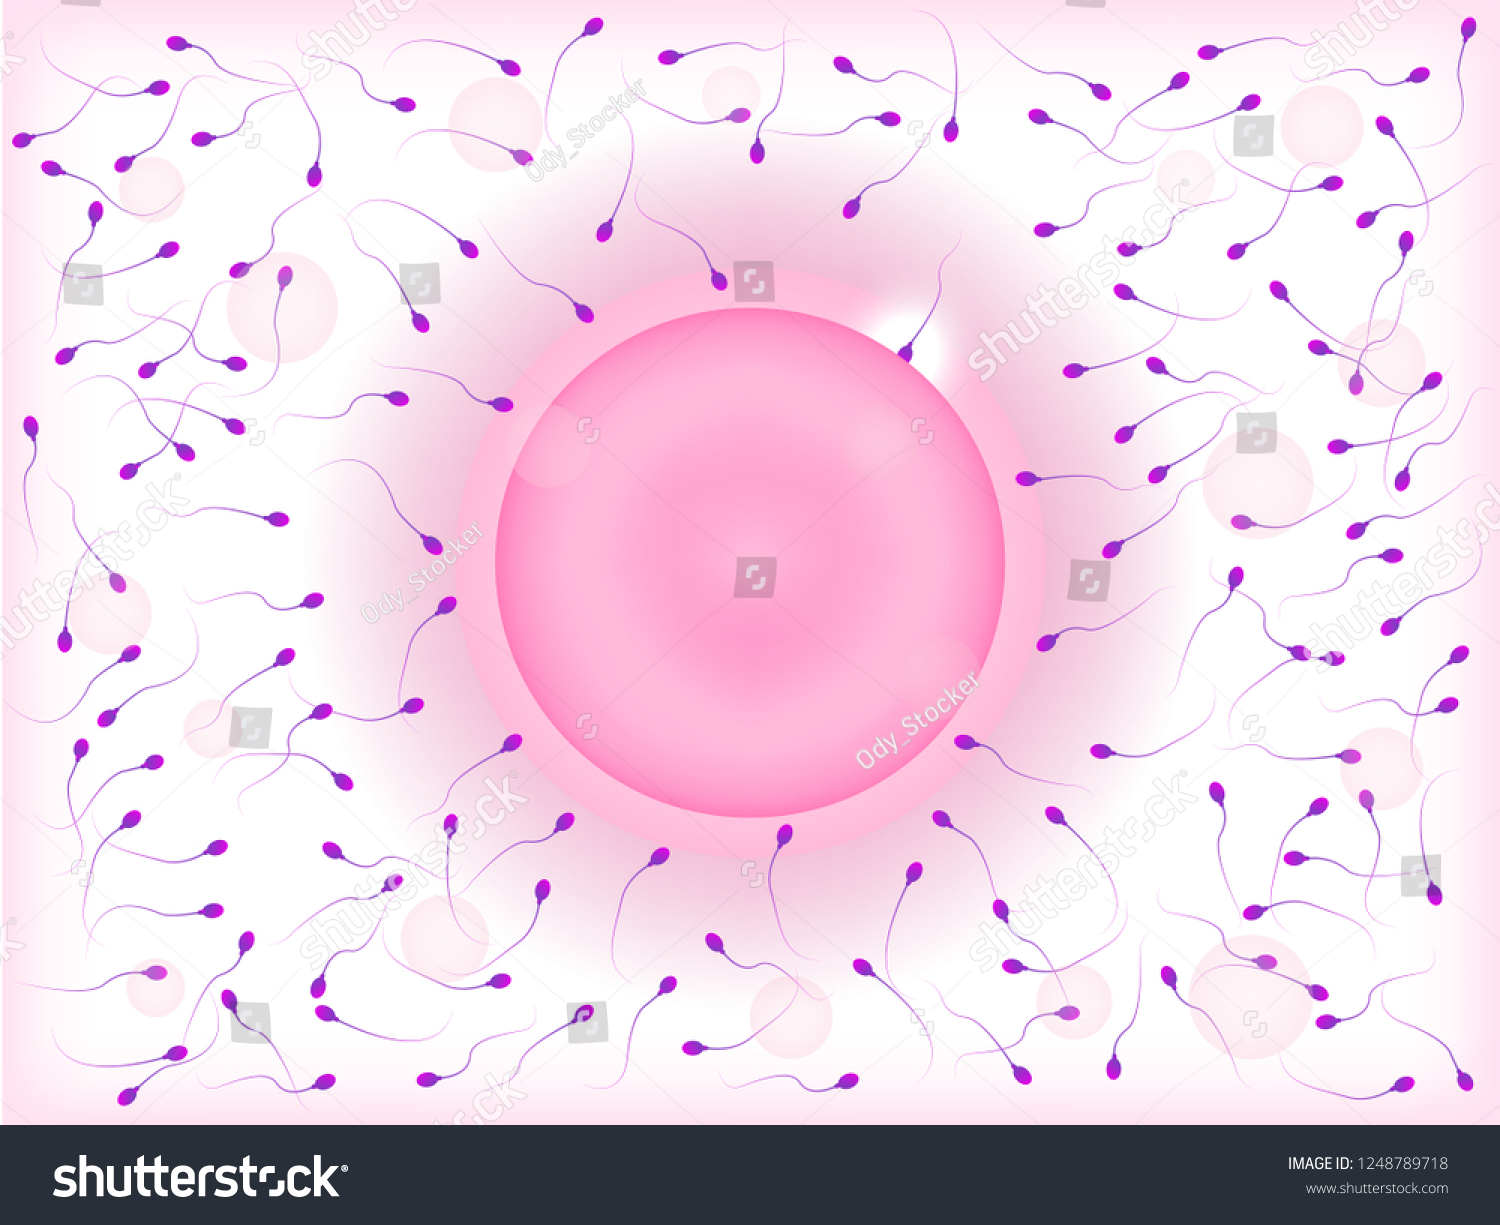 Ovum Sperm Cells Human Fertilization Stock Vector Royalty Free 1248789718 Shutterstock